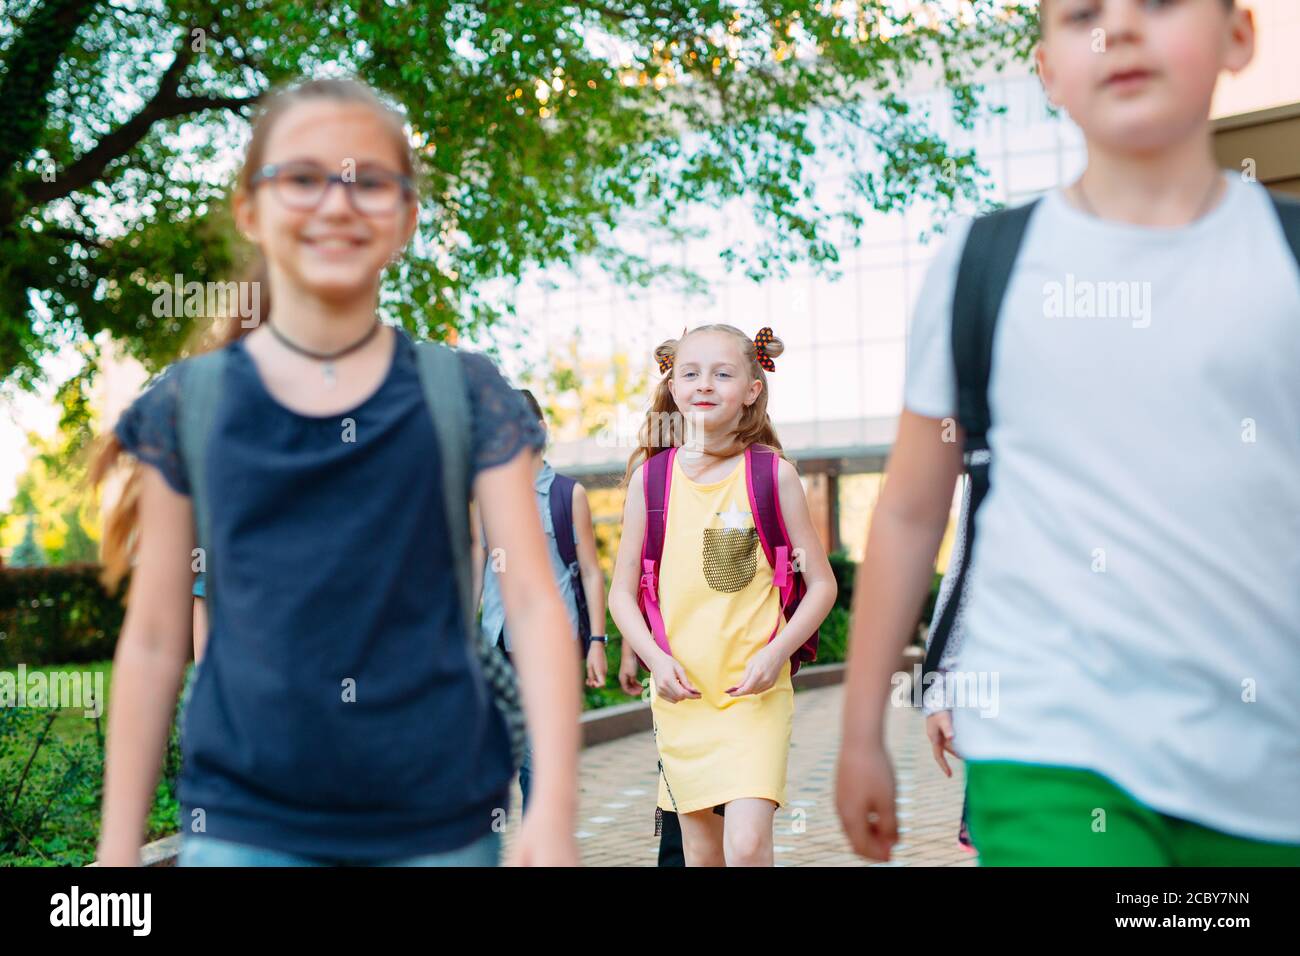 Gruppe Kinder gehen zusammen in die Schule. Stockfoto